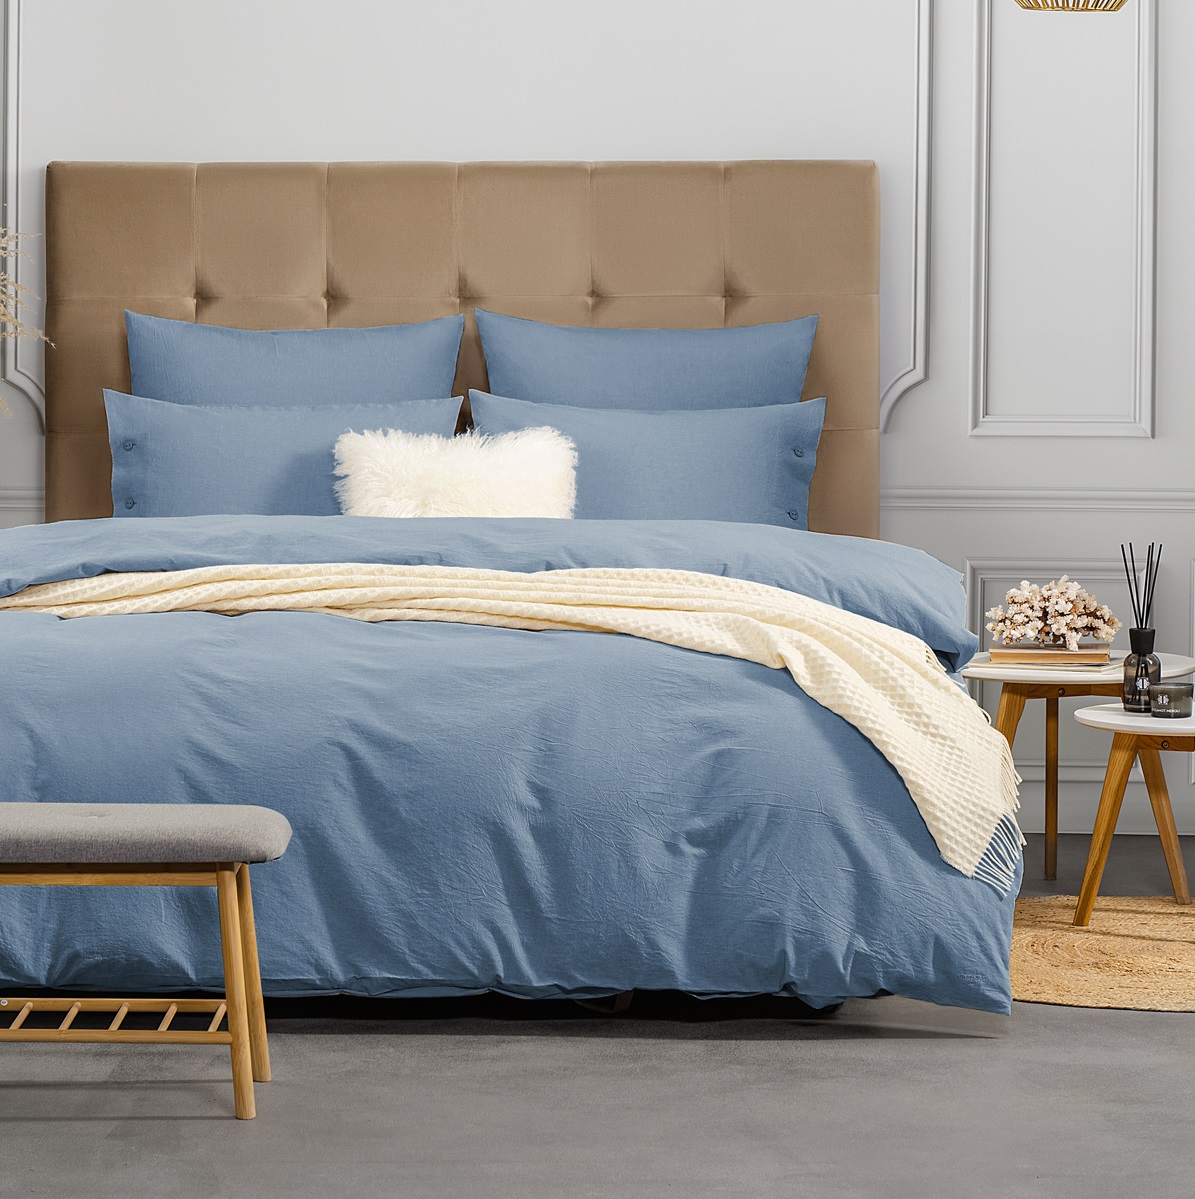 Комплект постельного белья Prime Prive Смоген Двуспальный кинг сайз голубой, размер Кинг сайз